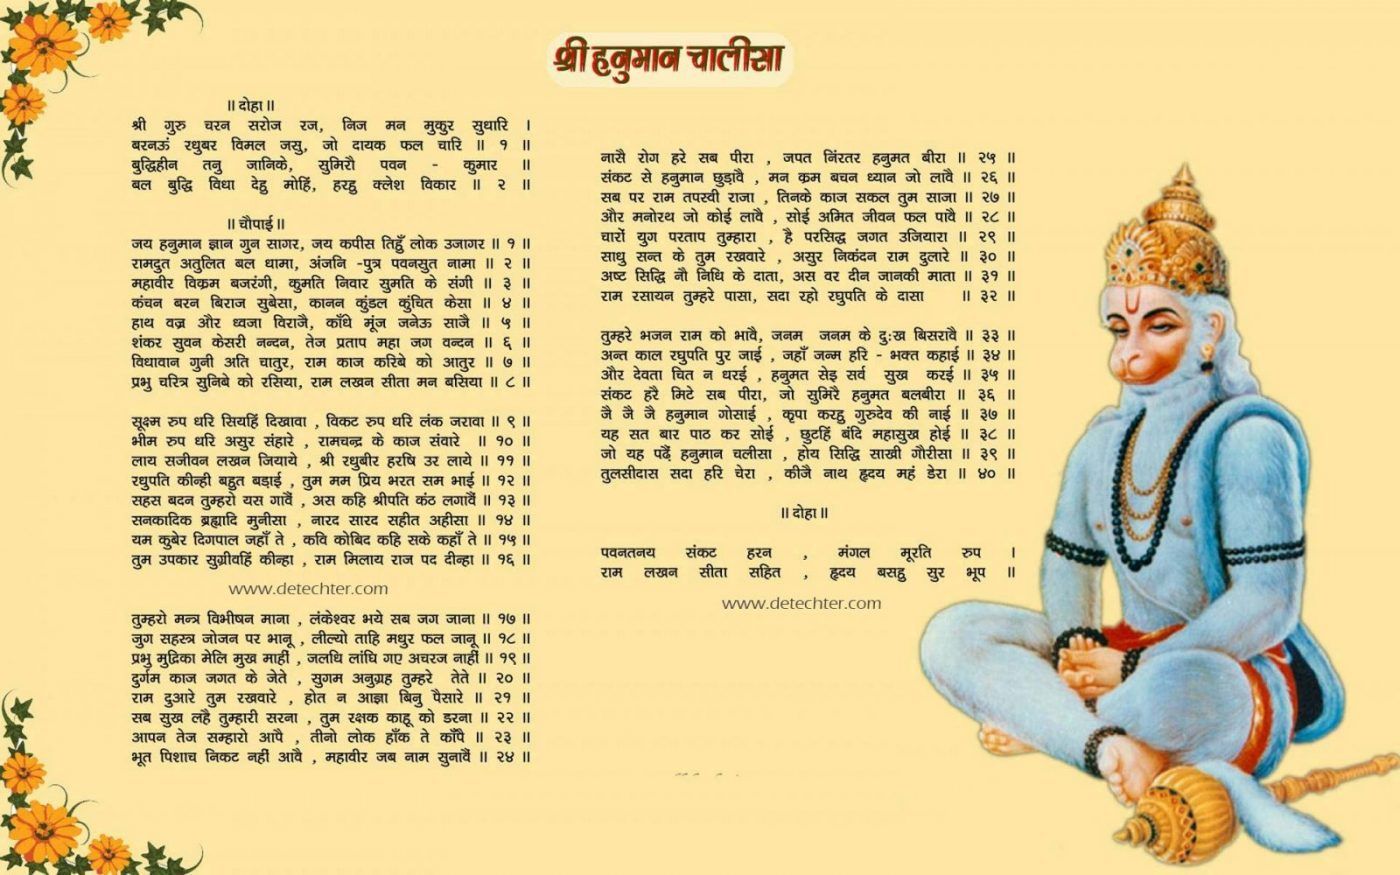 Hanuman chalisa lyrics in hindi and meaning